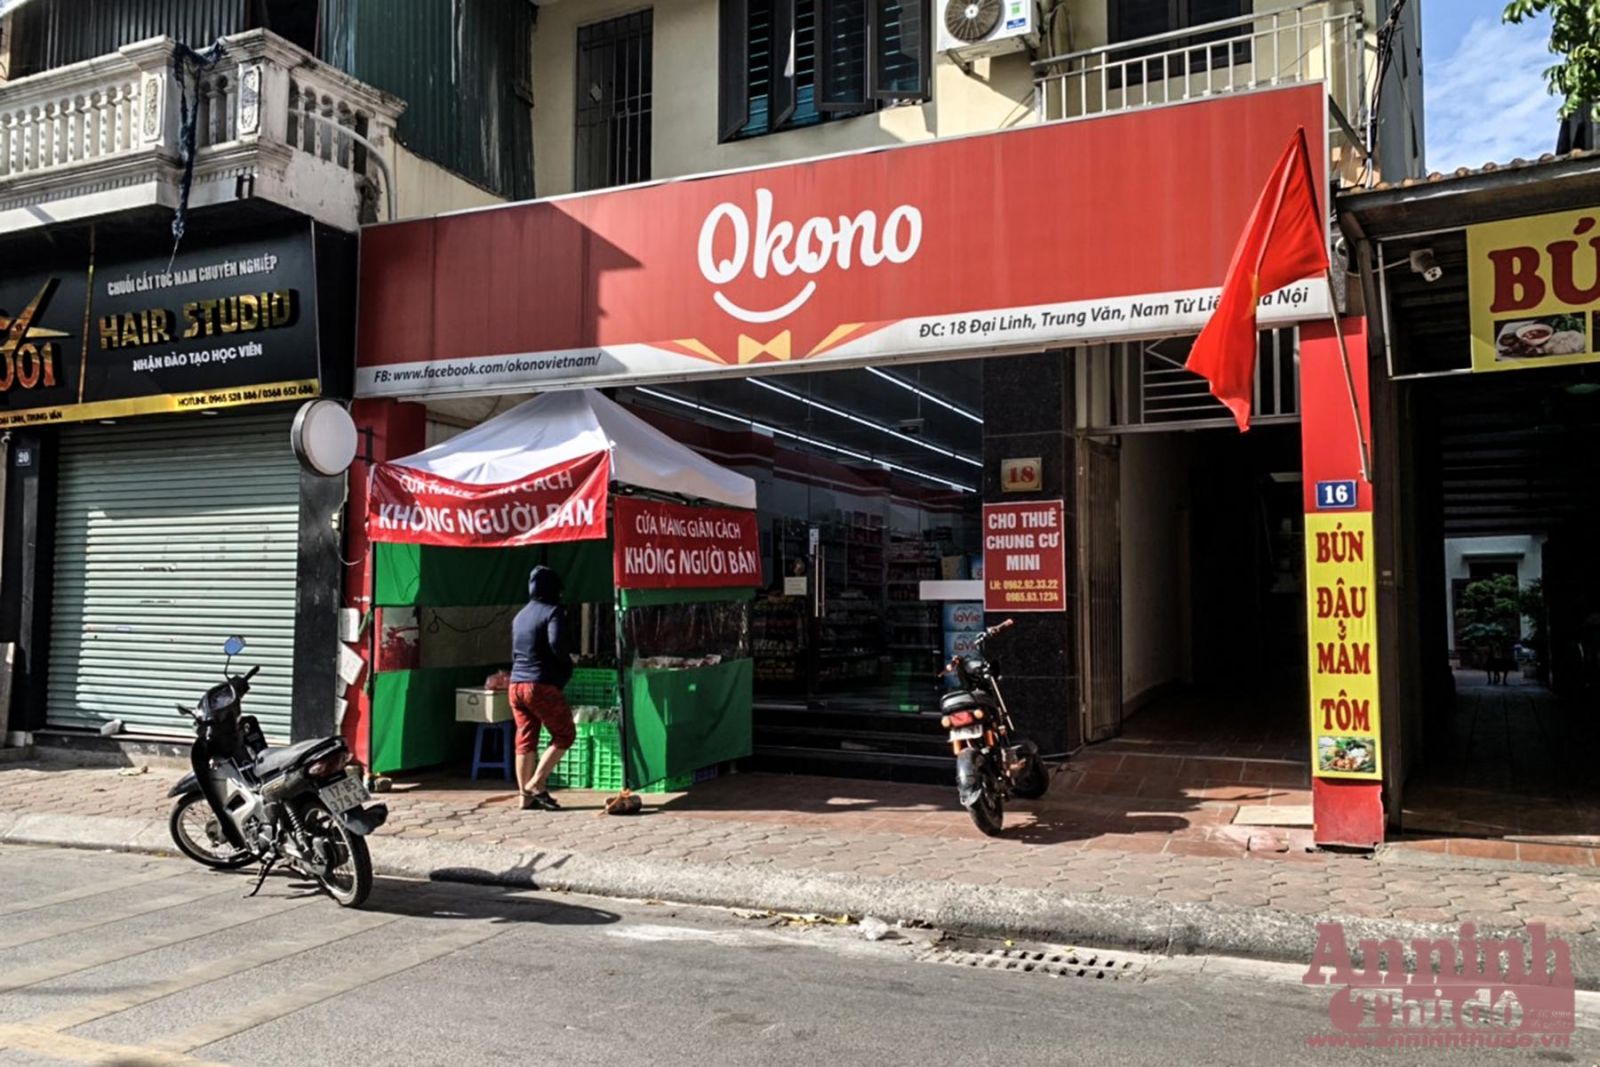 Một siêu thị tại địa chỉ 18, phố Đại Linh, phường Trung Văn, quận Nam Từ Liêm, Hà Nội đã mở gian hàng giãn cách không người bán để phòng dịch Covid-19